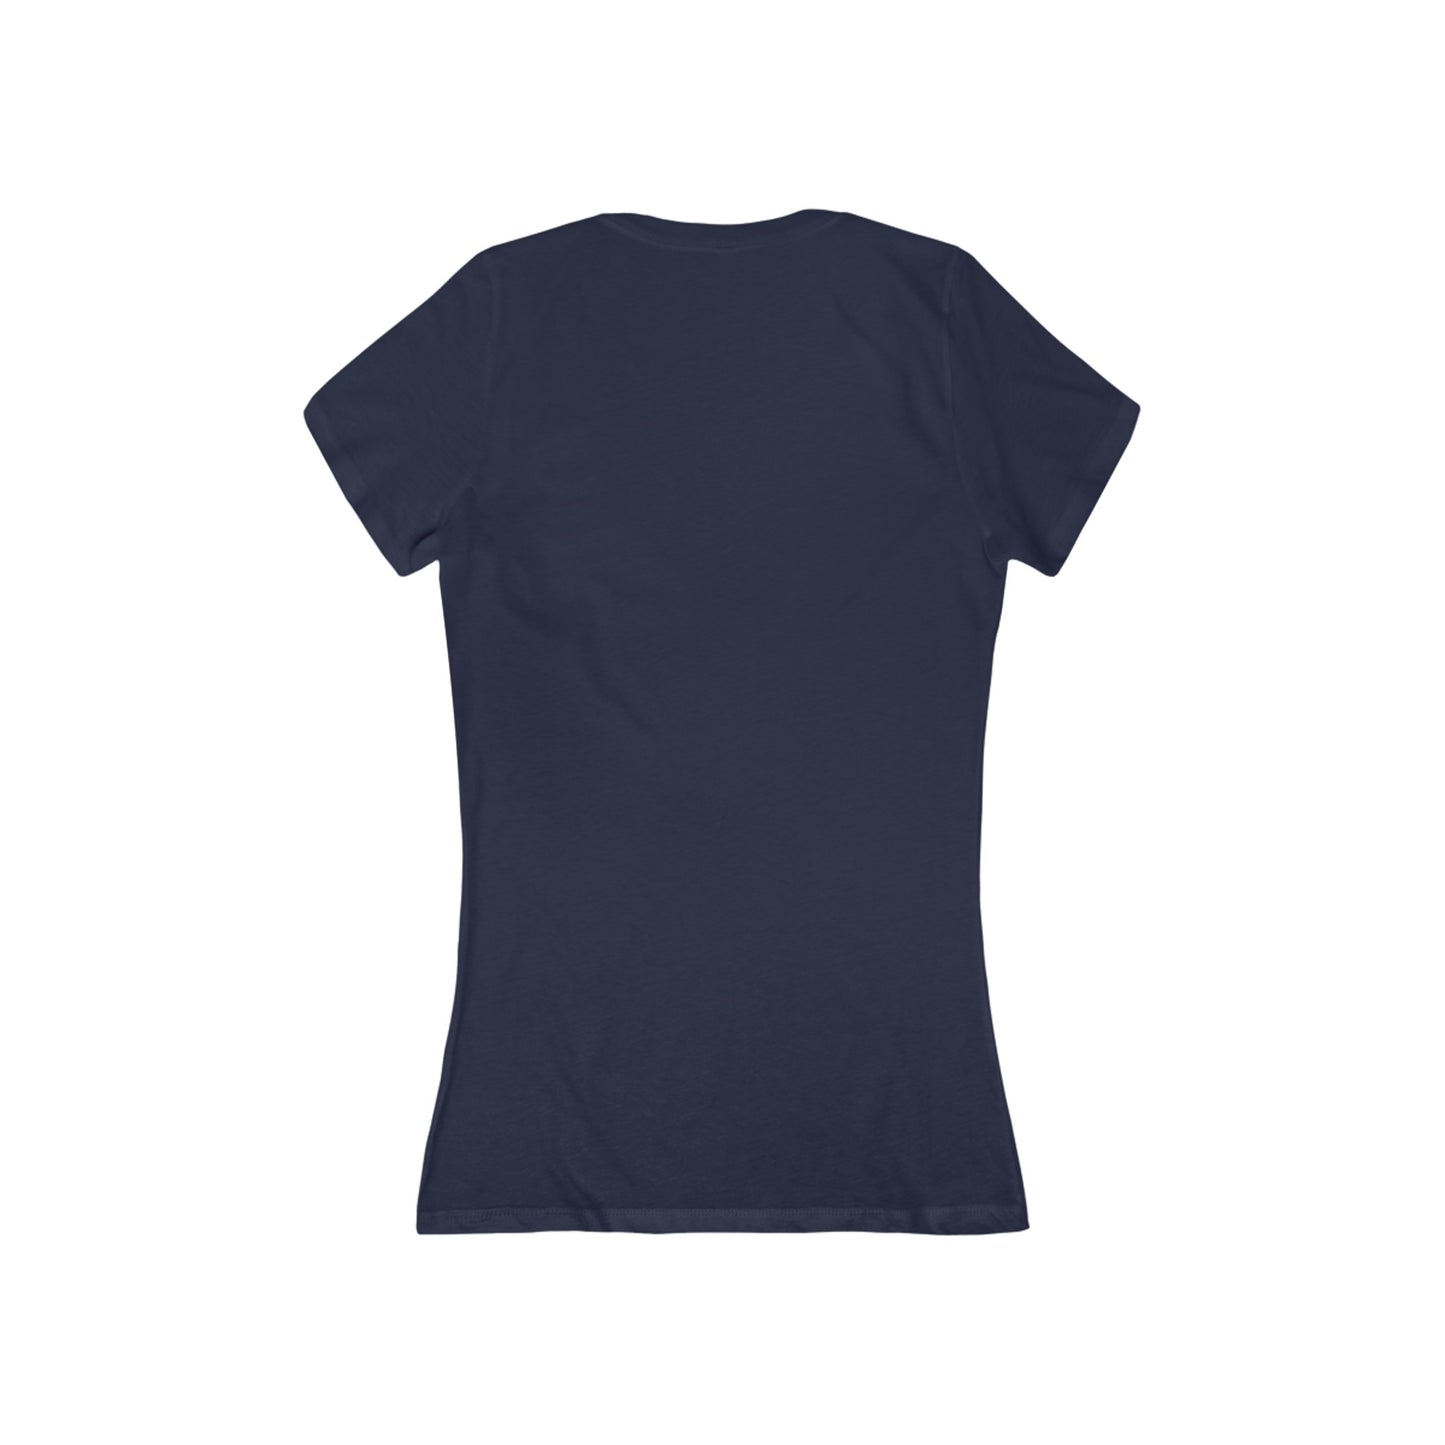 Centennial - Ladies Deep V-Neck T-Shirt - Class Of 2024